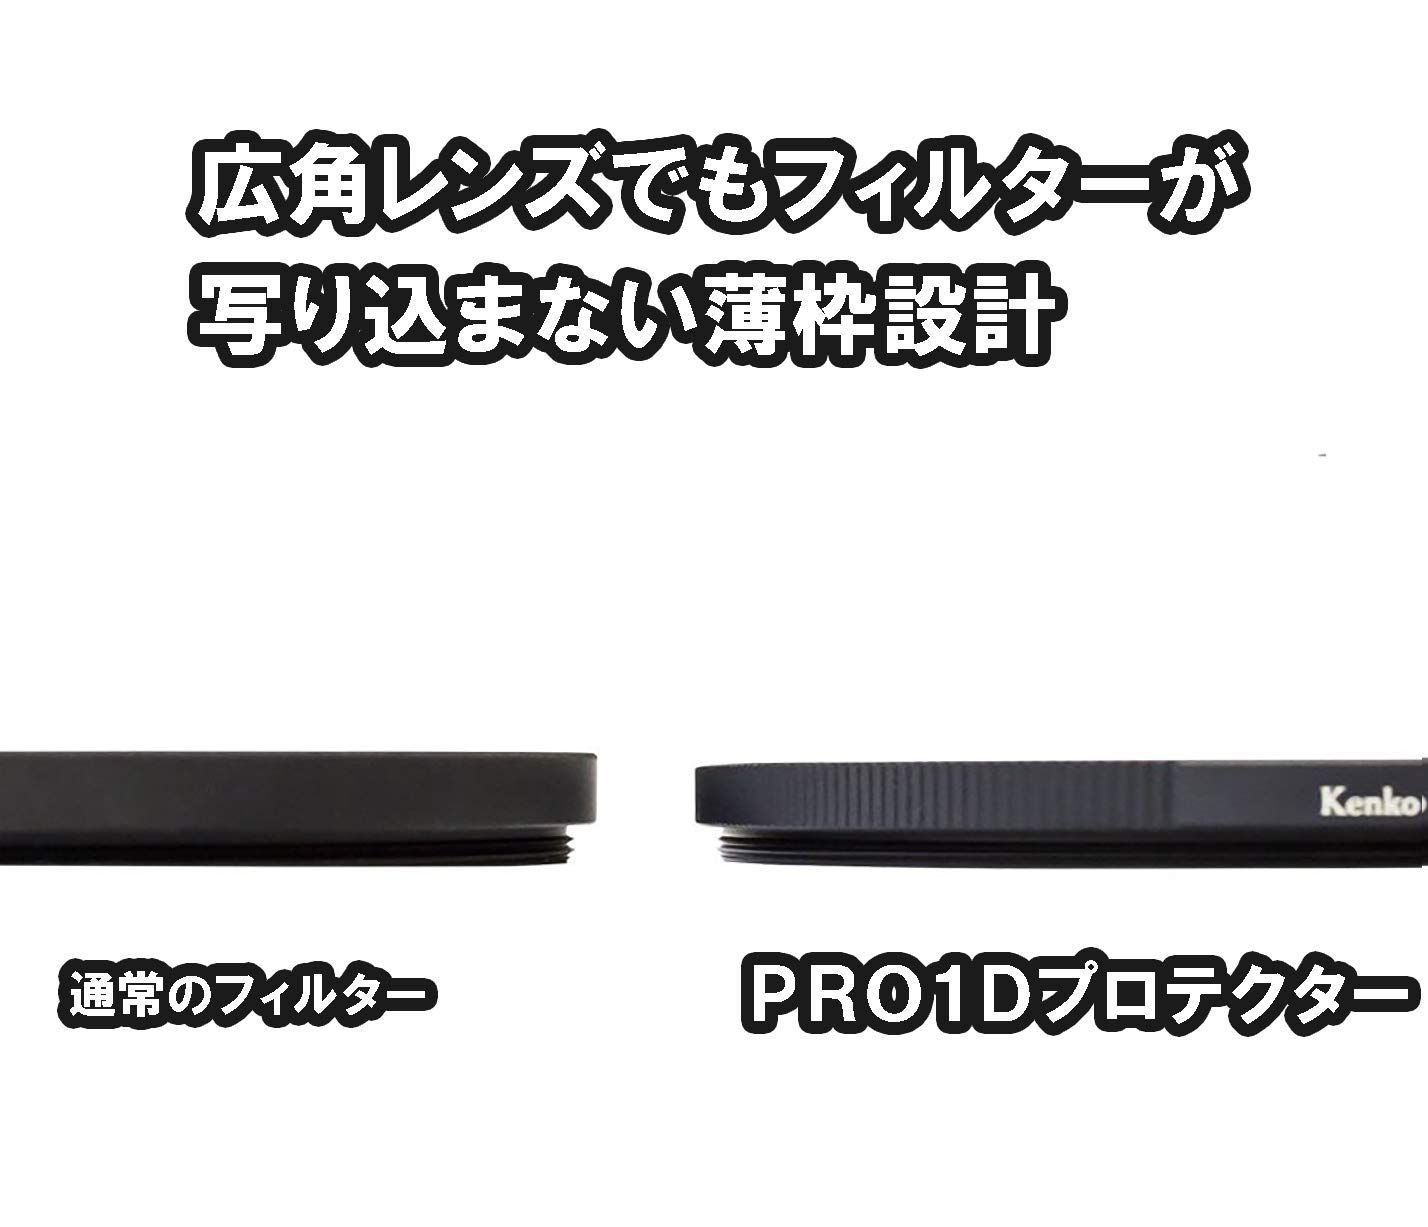 Kenko 49mm レンズフィルター MC プロテクター NEO レンズ保護用 日本